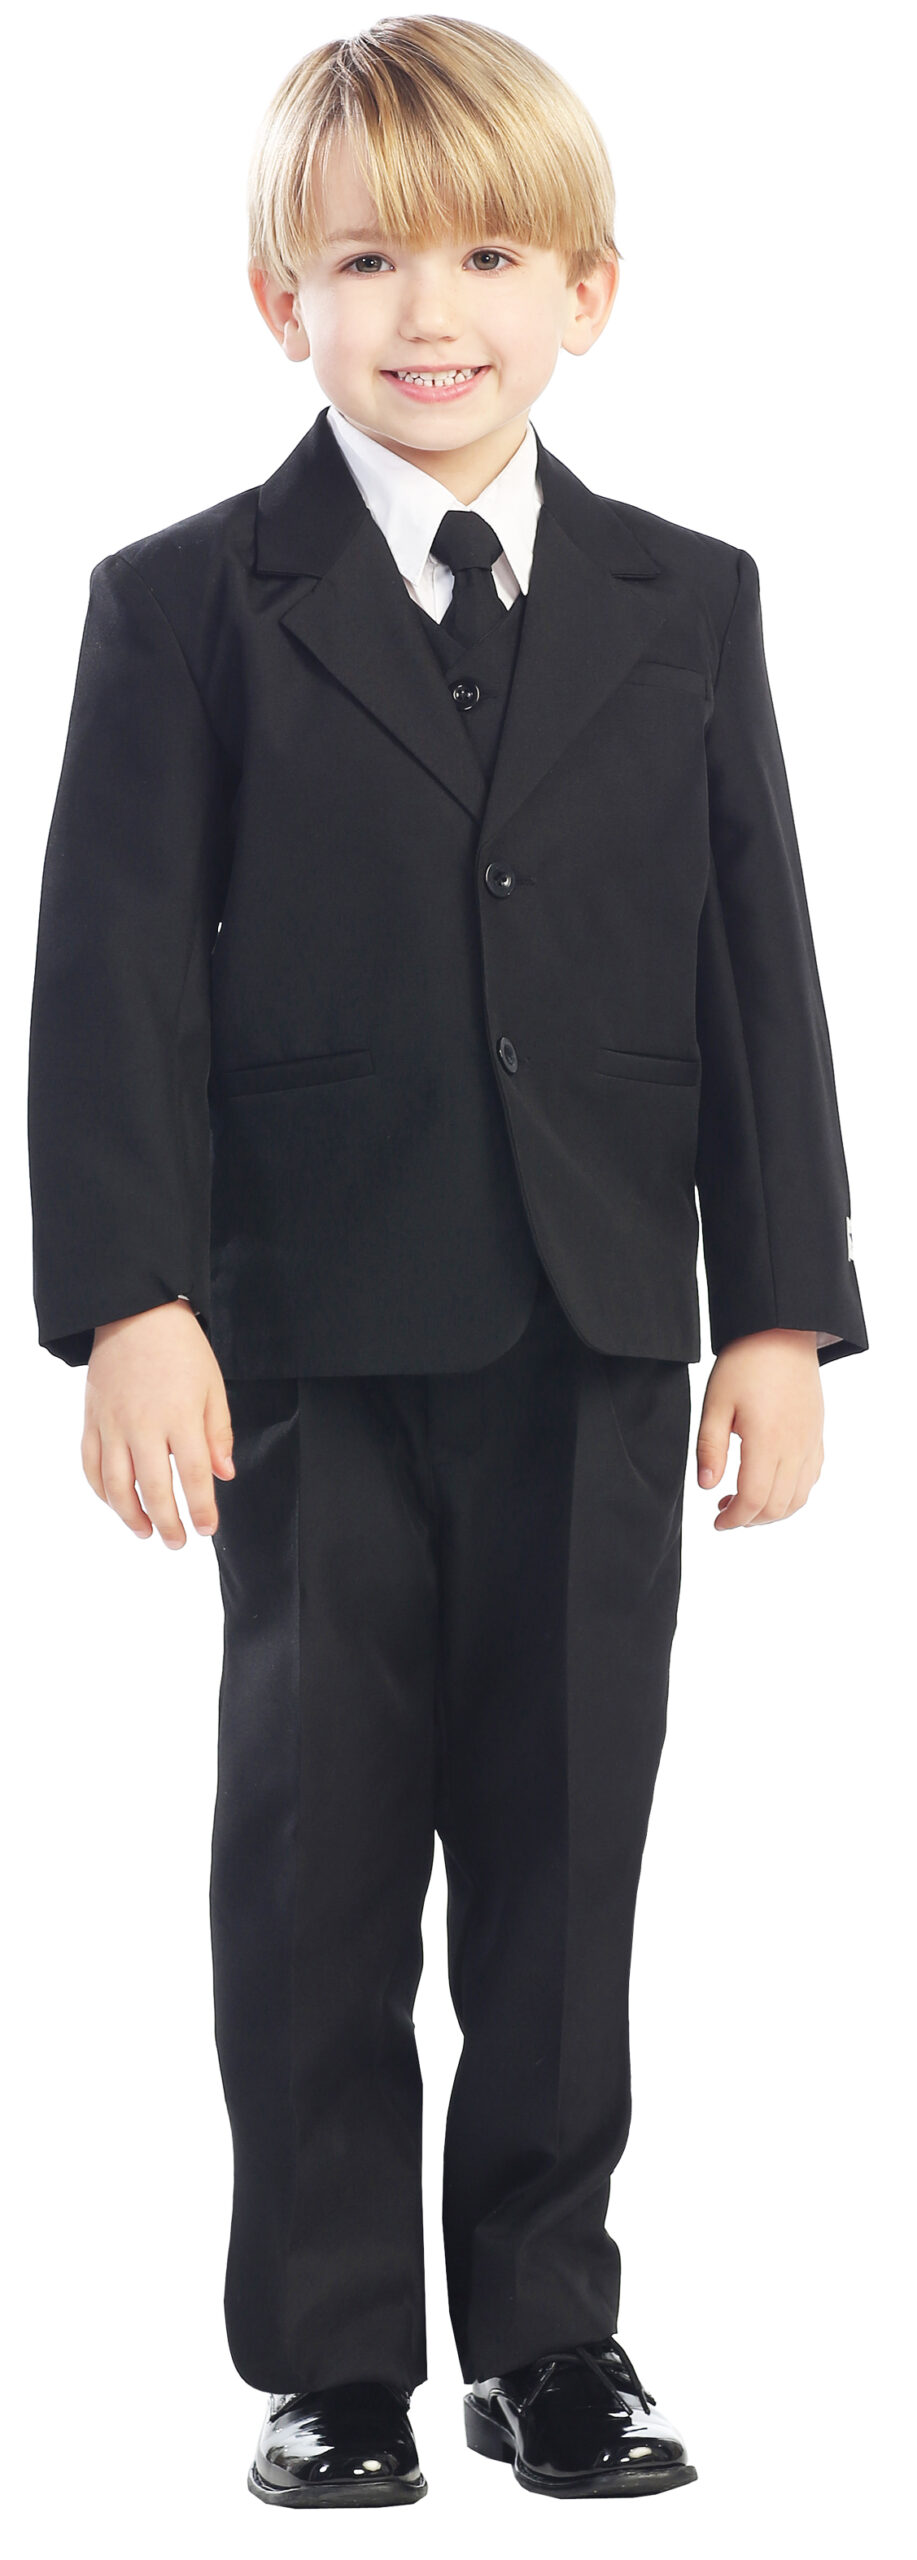 Avery Hill 5-Piece Boy's 2-Button Dress Suit Full-Back Vest - Black Size 20